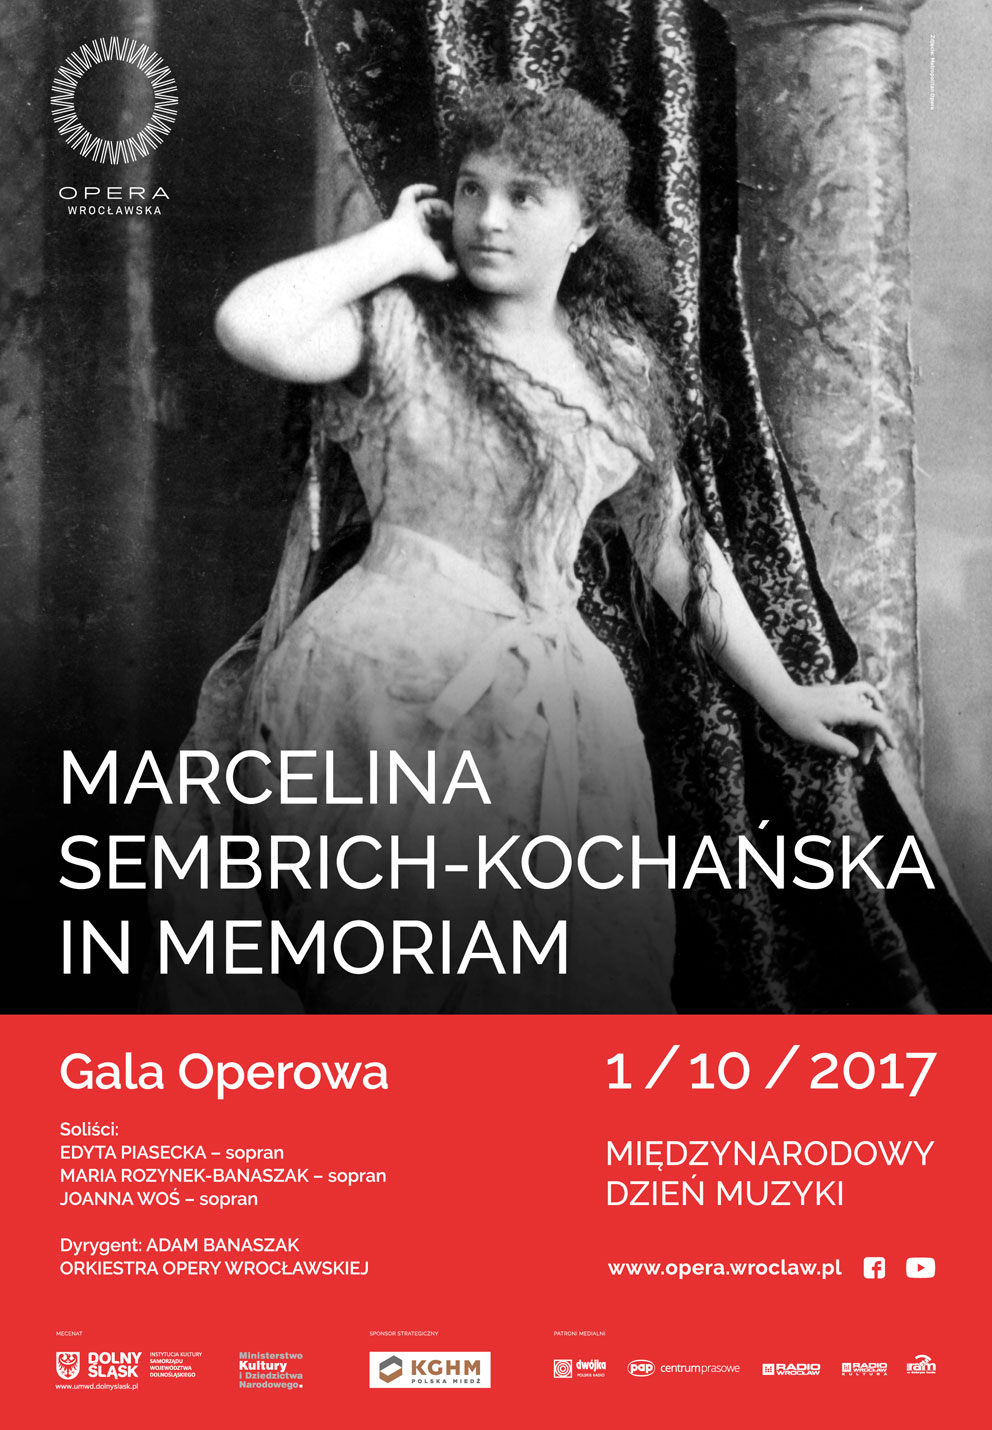 Marcelina Sembrich-Kochańska in memoriam